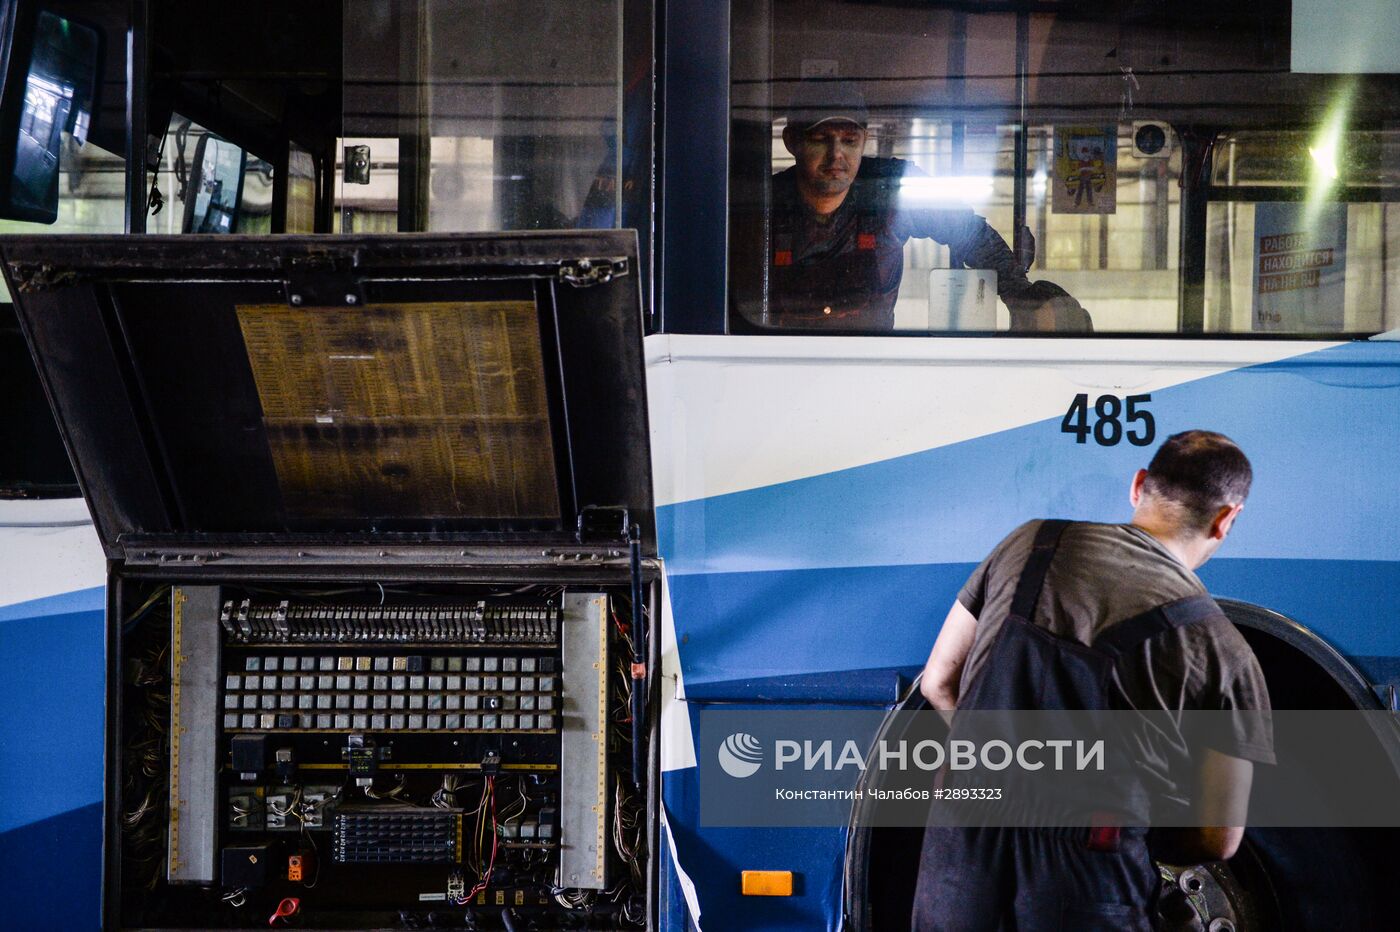 Автобусно-троллейбусный парк в Великом Новгороде